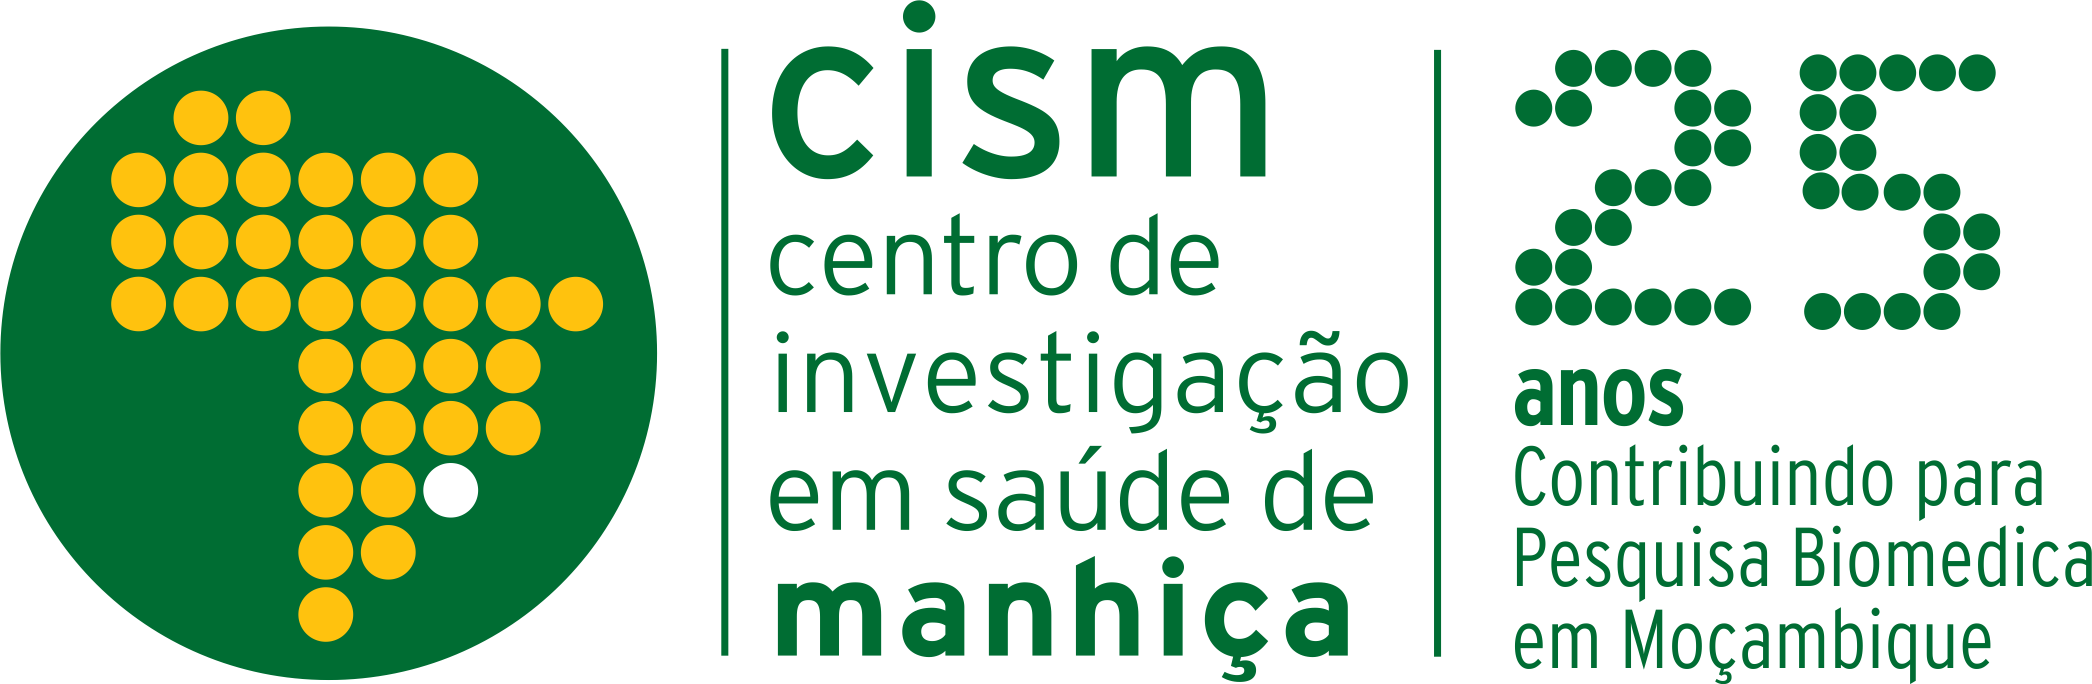 Logo cism